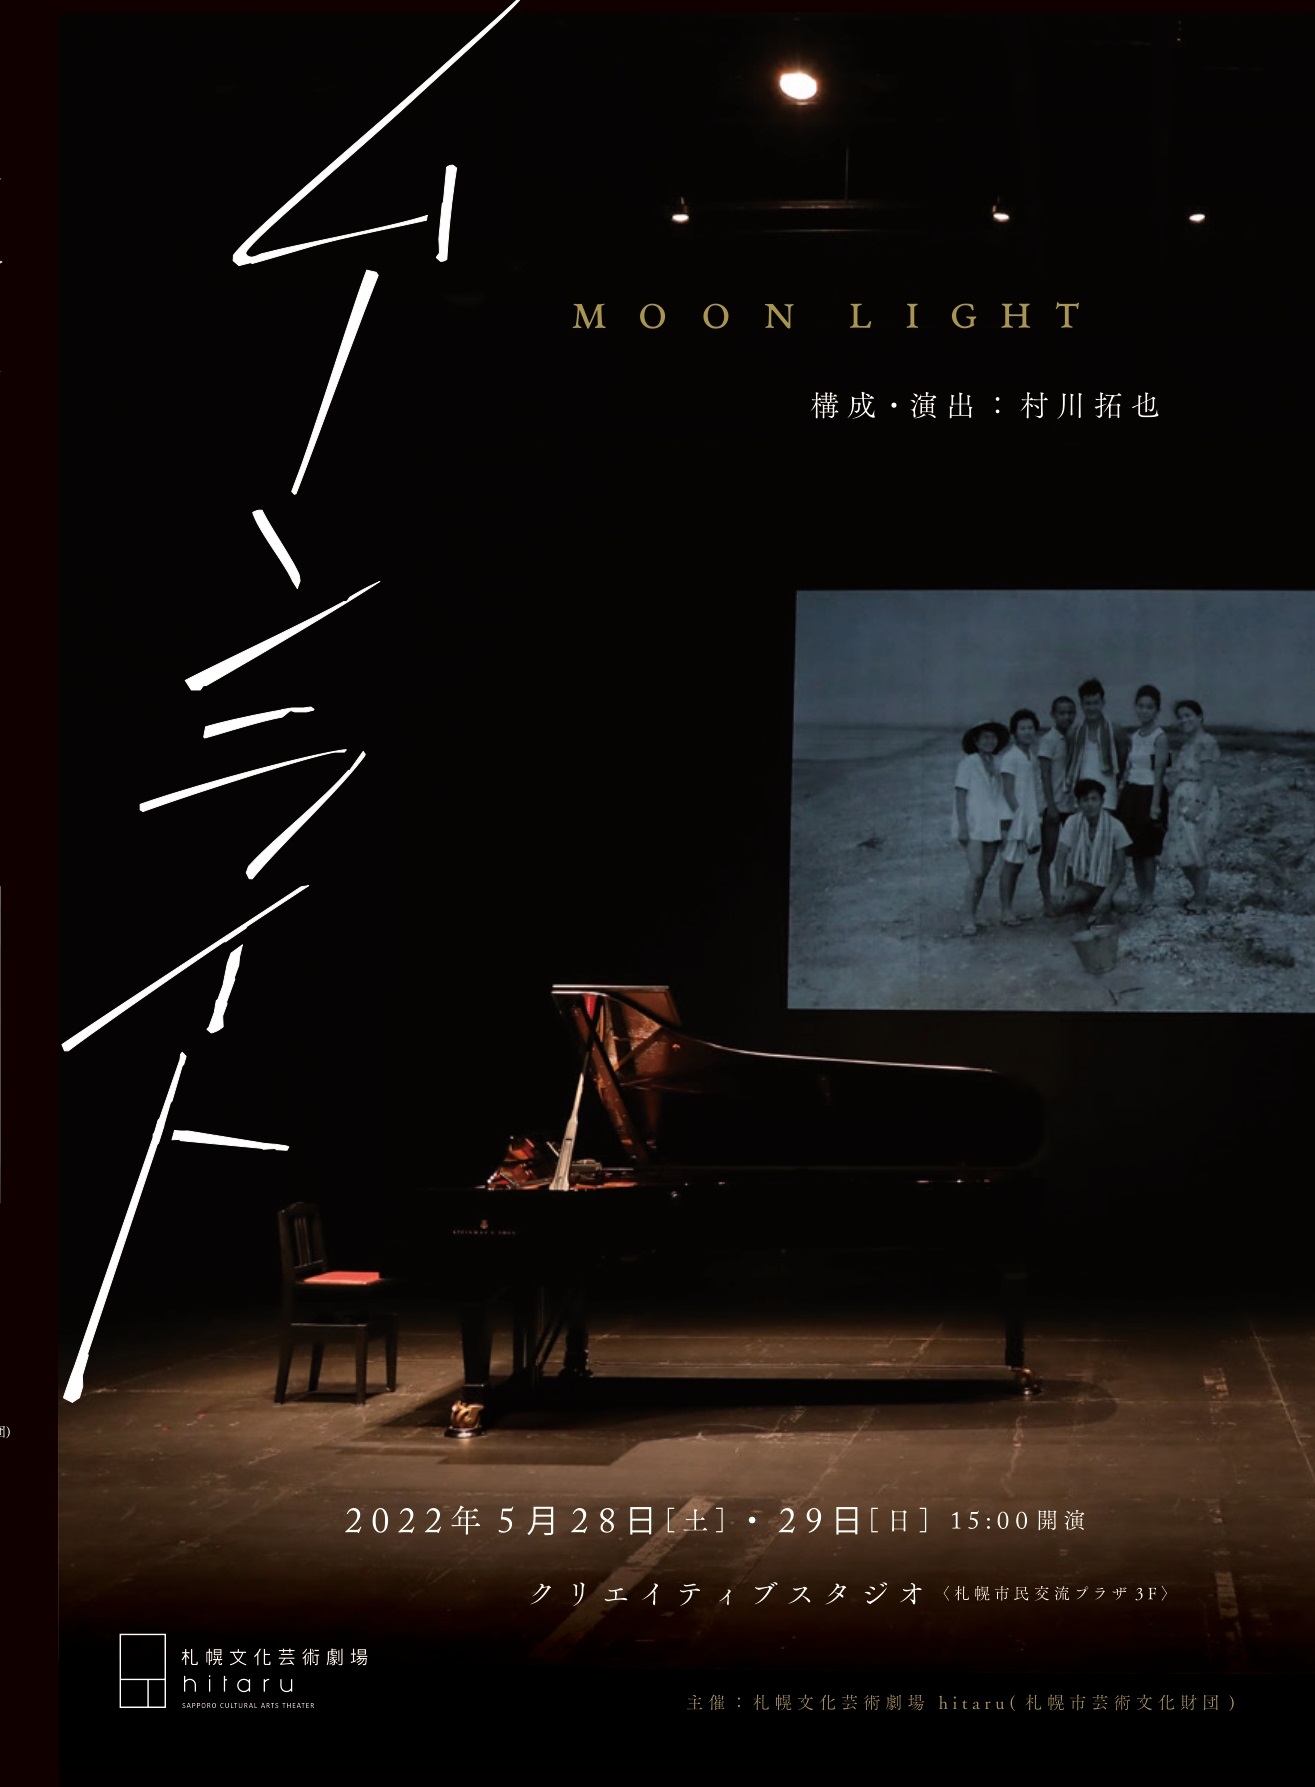 “Moonlight” by Takuya Murakawa (director, film artist)image